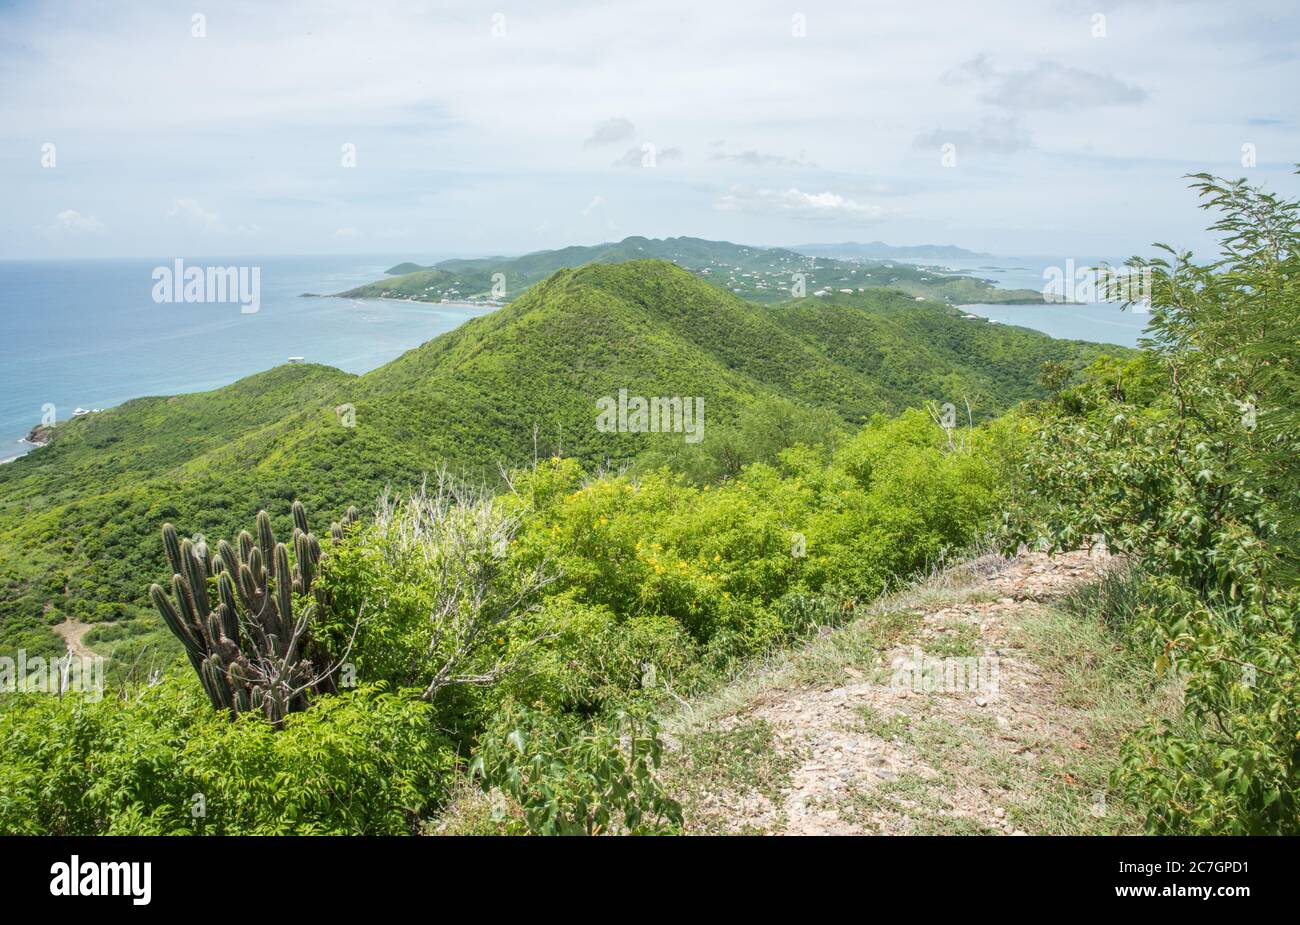 Vista panorámica de las exuberantes colinas y el mar Caribe desde la caminata de Goat Hill en el extremo este de Santa Cruz en las Islas Vírgenes de los Estados Unidos Foto de stock